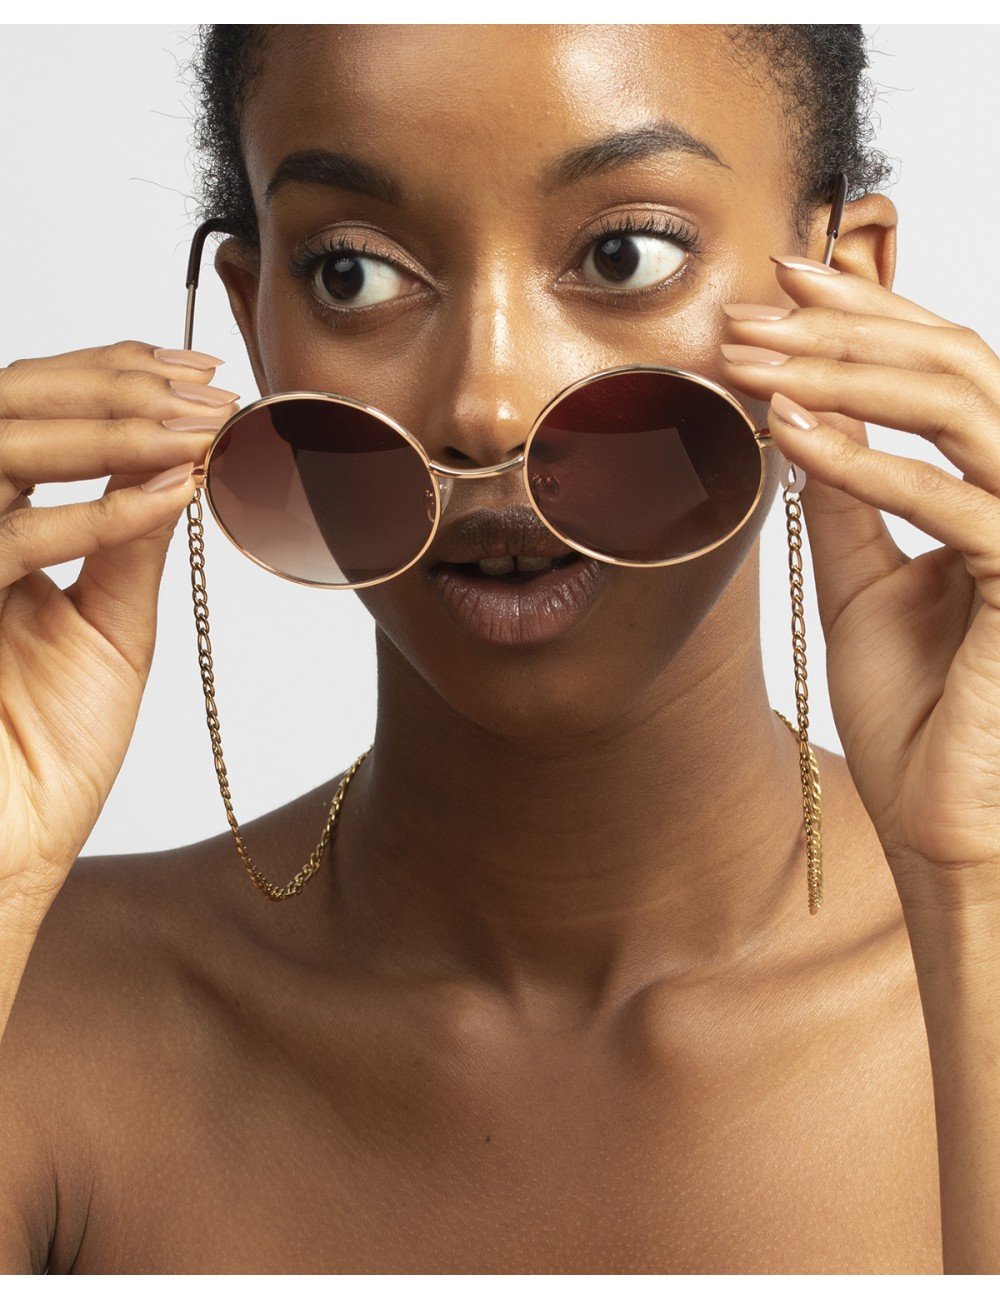 Figaro glasses chain gold - Sunglasses chain - Trium Jewelry